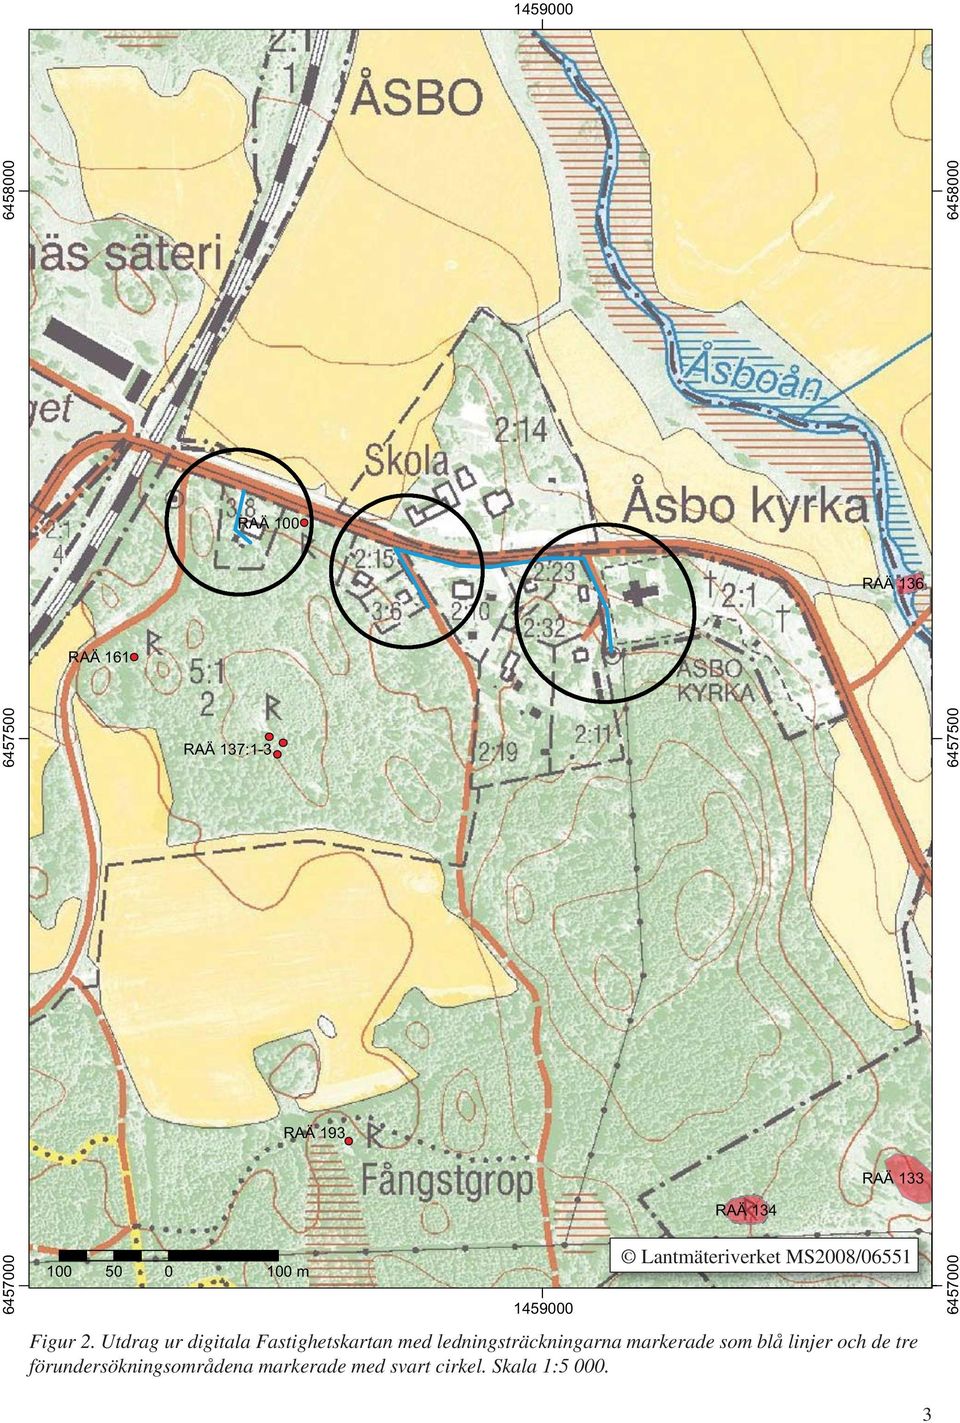 Utdrag ur digitala Fastighetskartan med ledningsträckningarna markerade som blå linjer